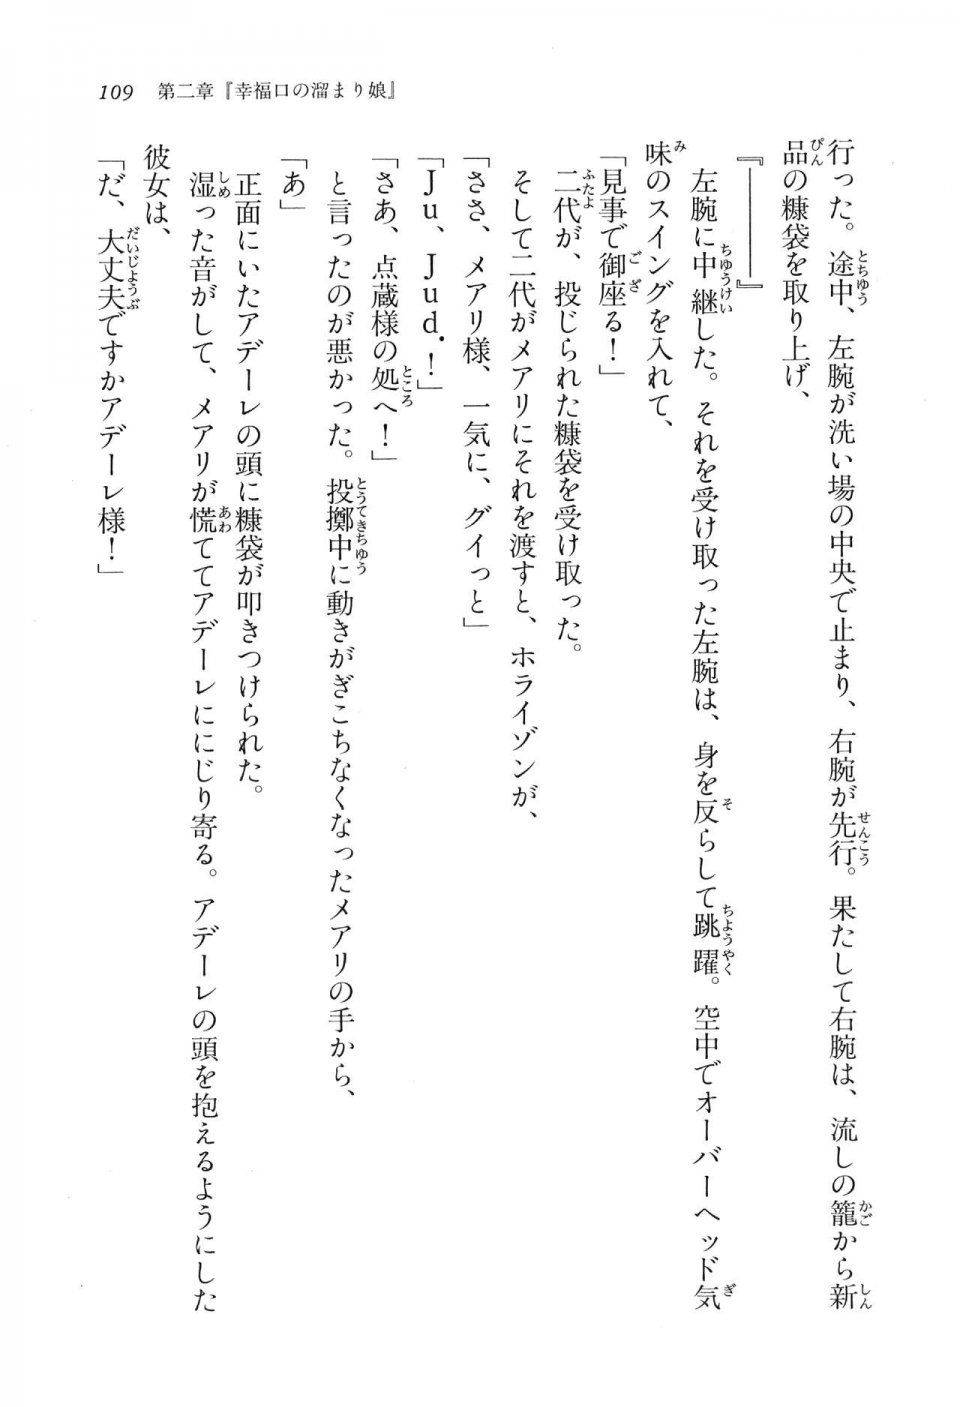 Kyoukai Senjou no Horizon LN Vol 16(7A) - Photo #109